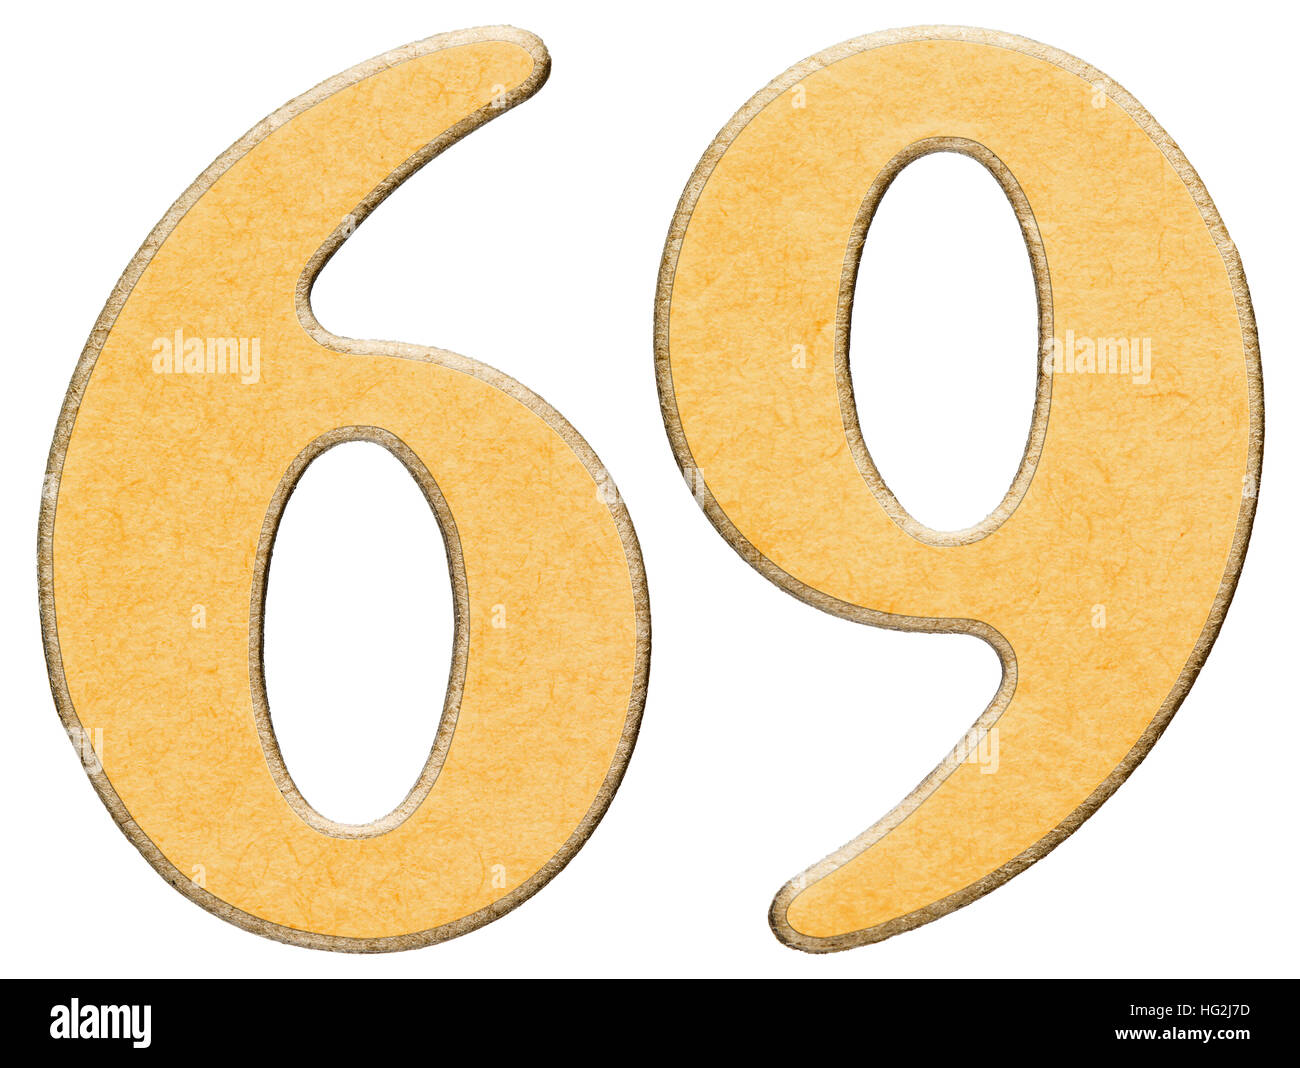 69, soixante-neuf, le chiffre de bois combiné avec insert, jaune isolé sur fond blanc Banque D'Images